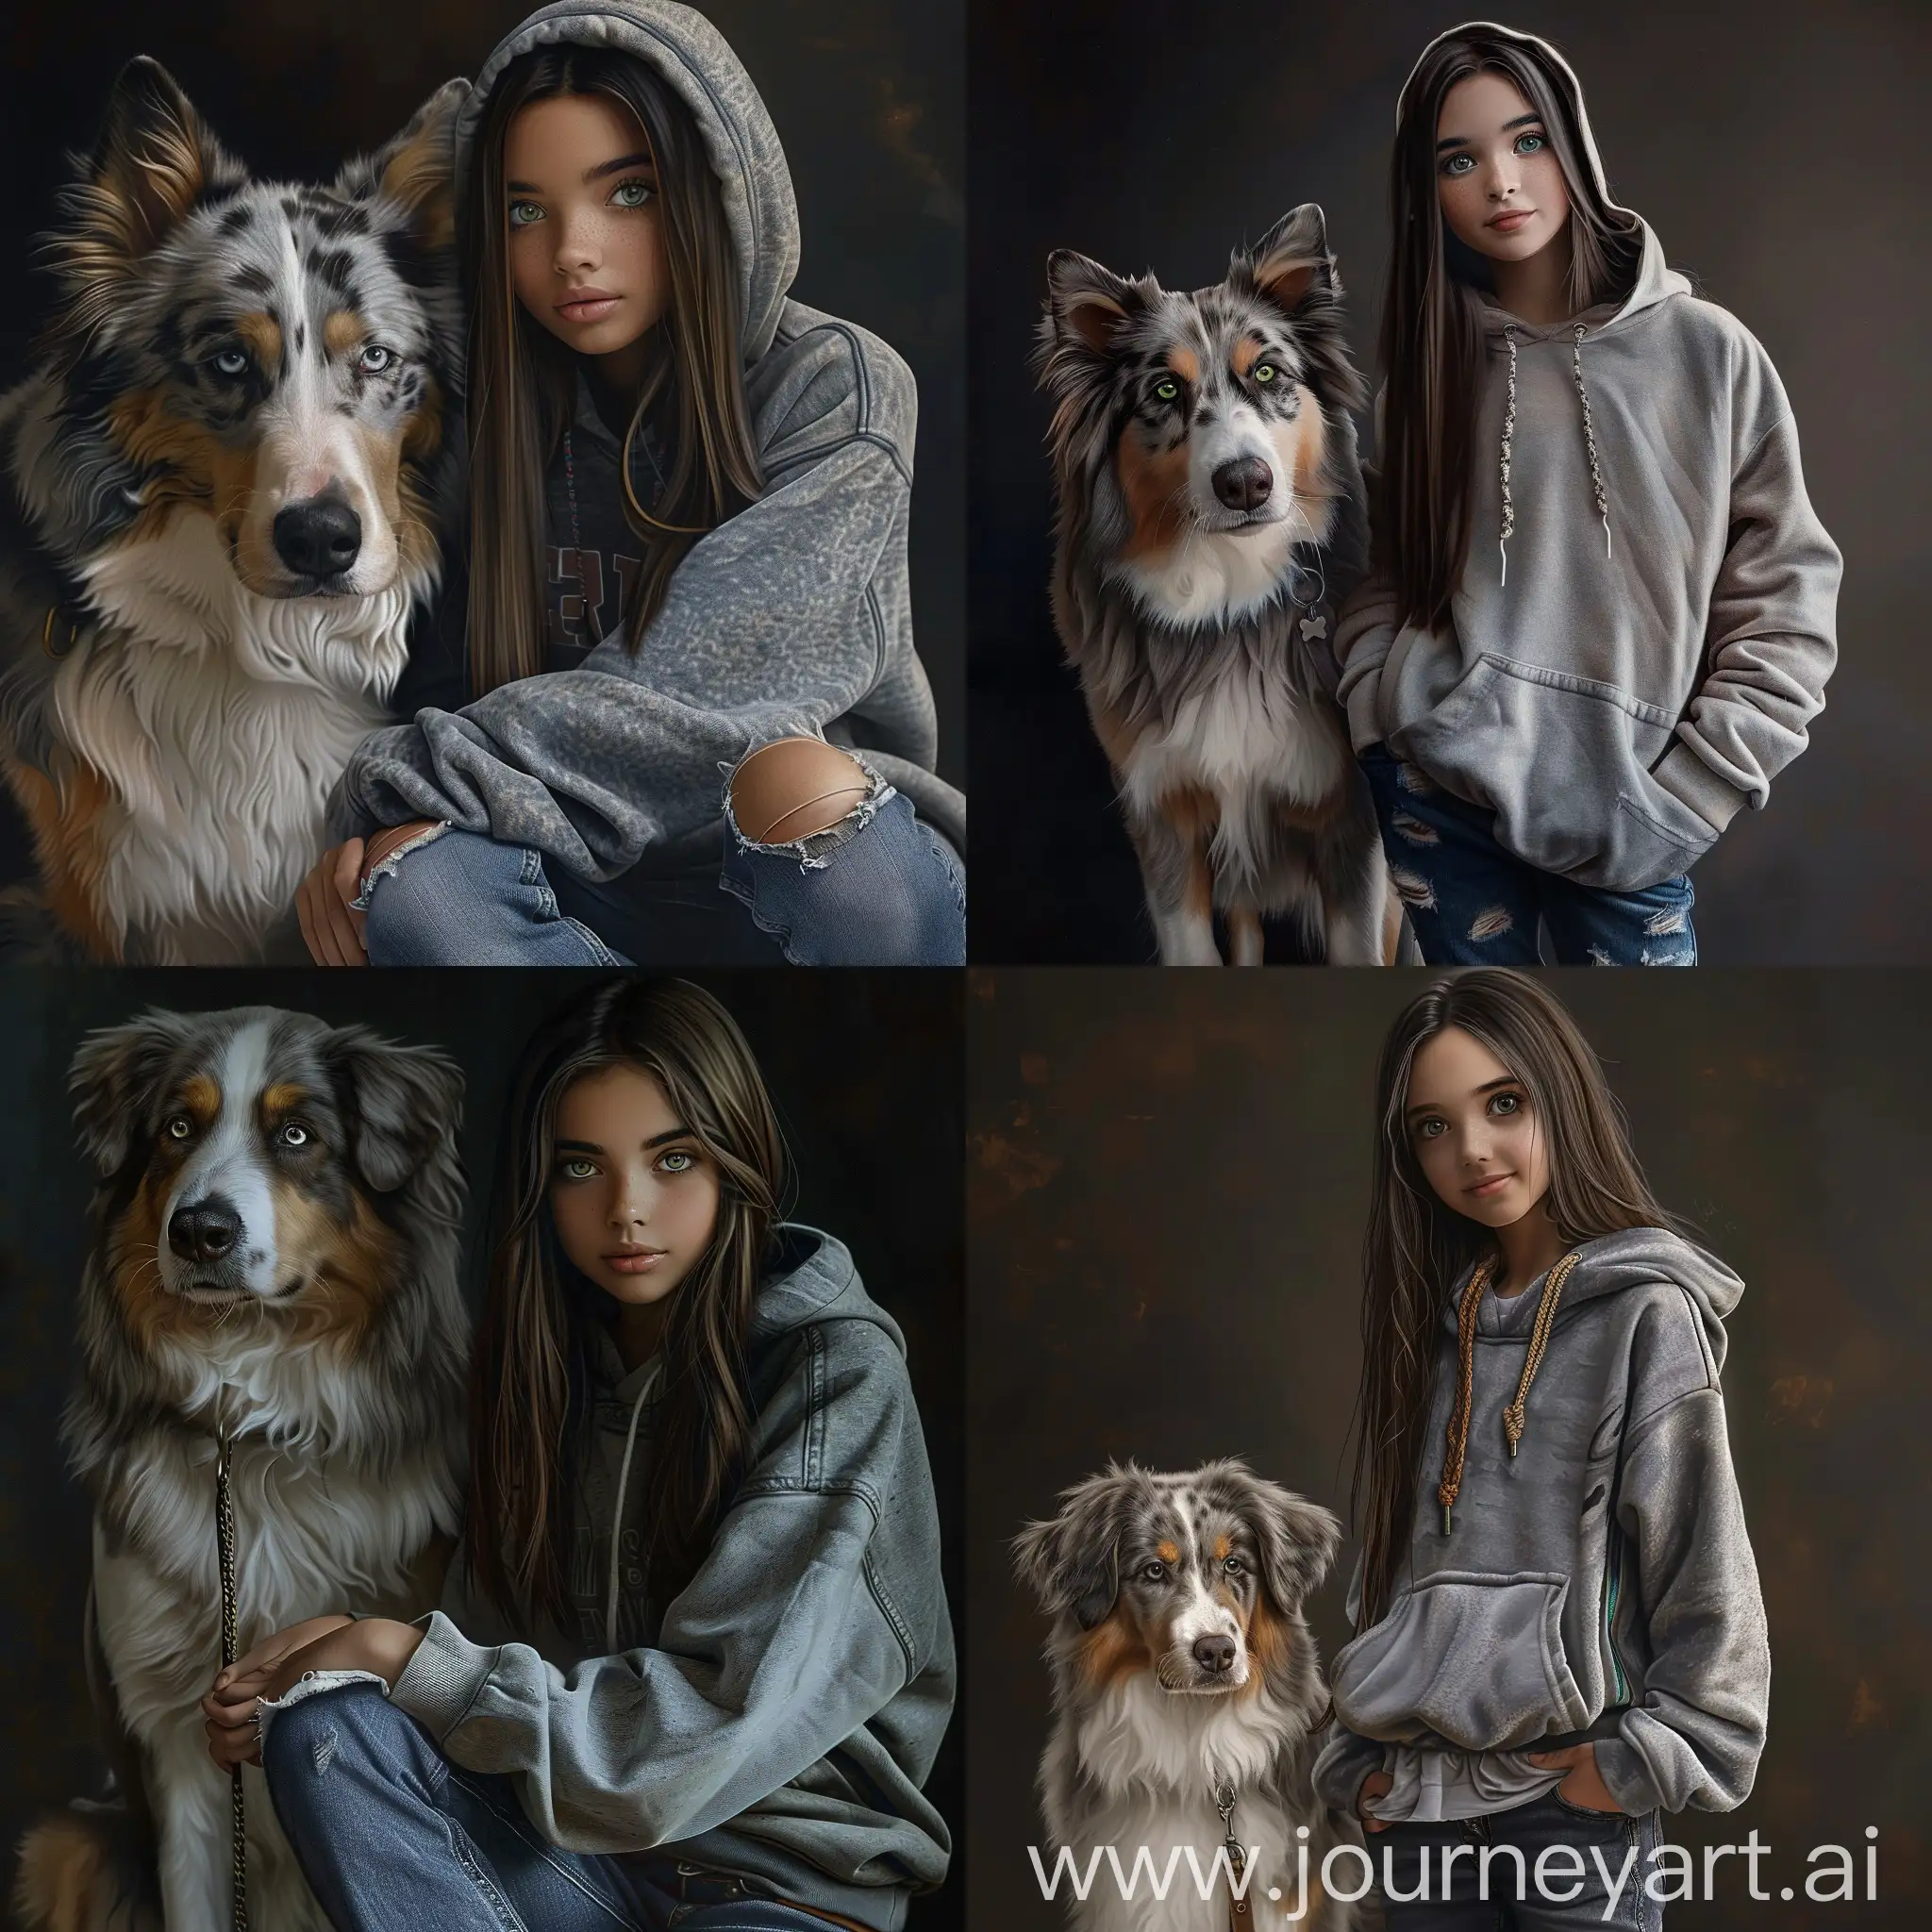 Stylish-Teen-Girl-with-Australian-Shepherd-on-Moody-Background